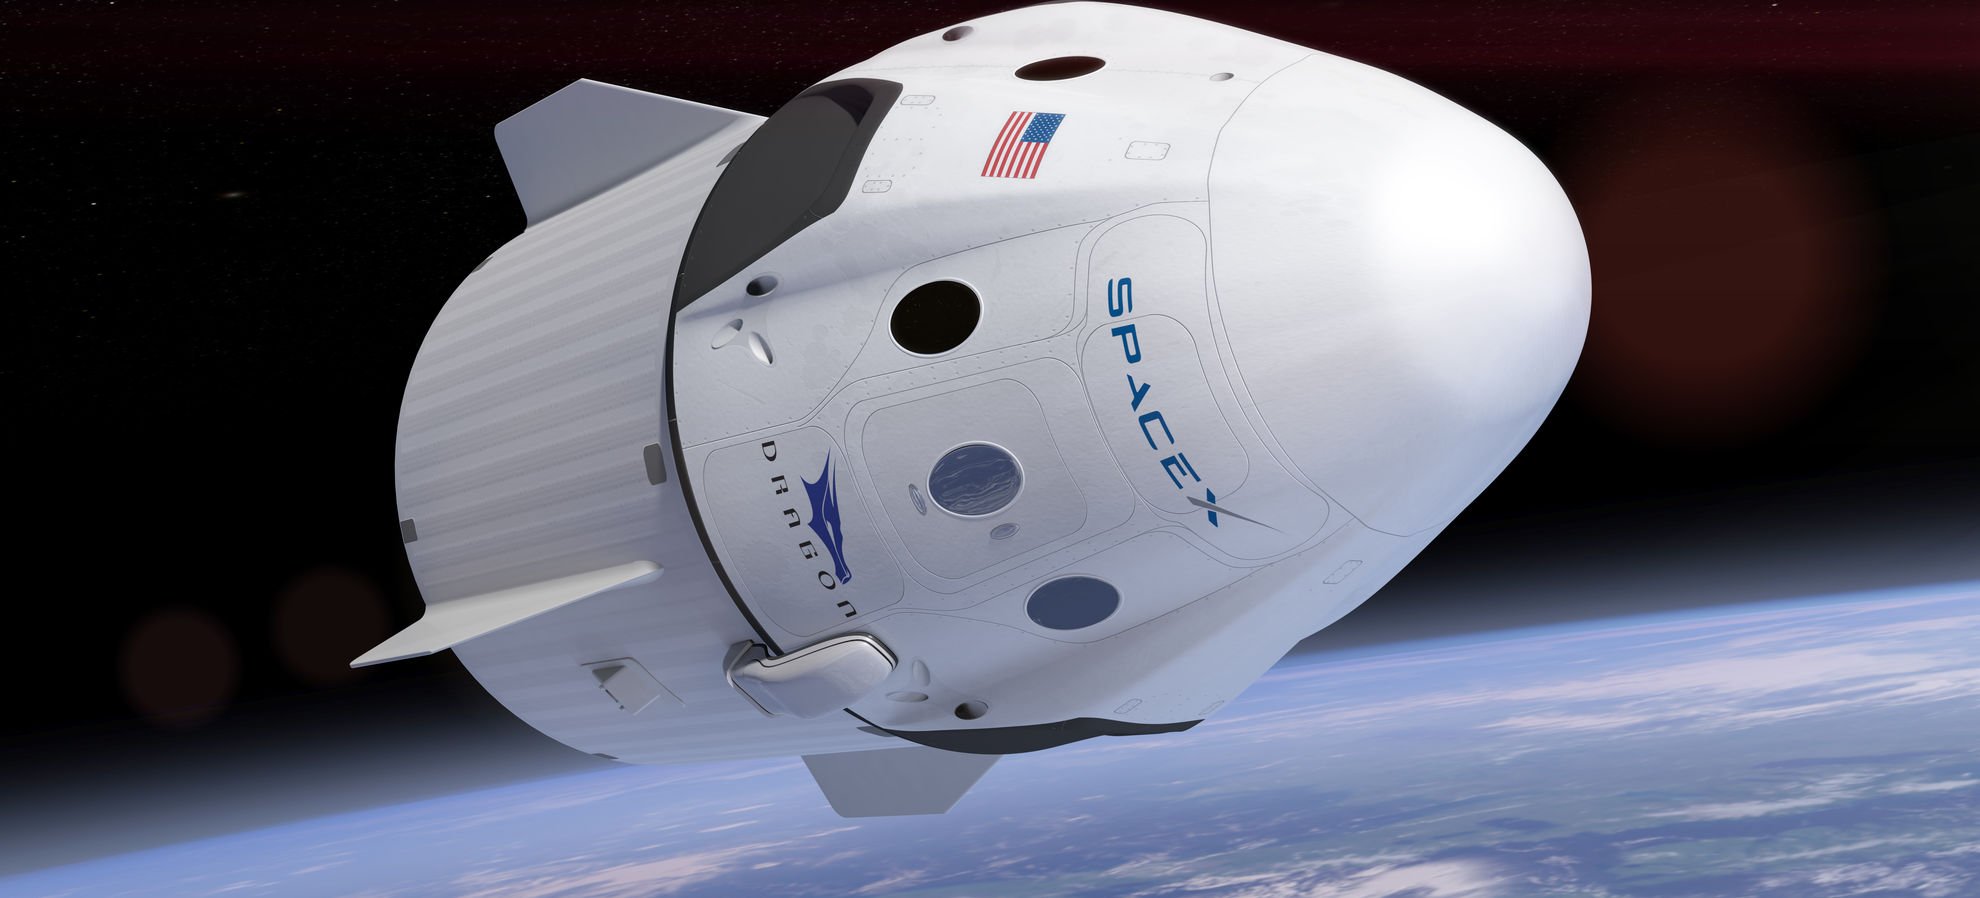  Capsula Dragon, lansată de SpaceX, a amerizat cu succes